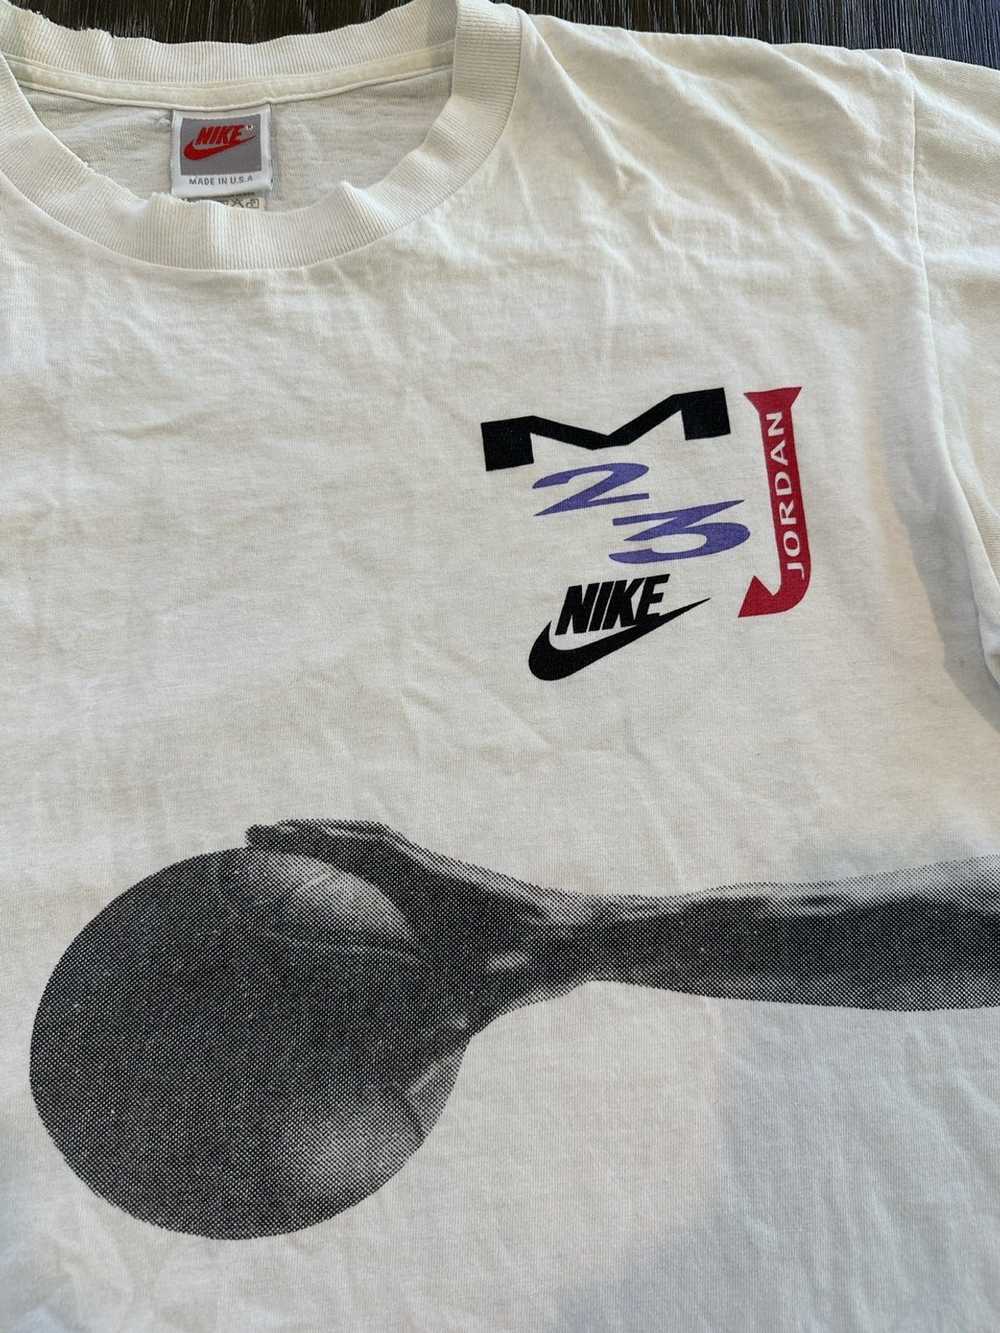 Jordan Brand × NBA × Nike Vintage Jordan Tee Shirt - image 2